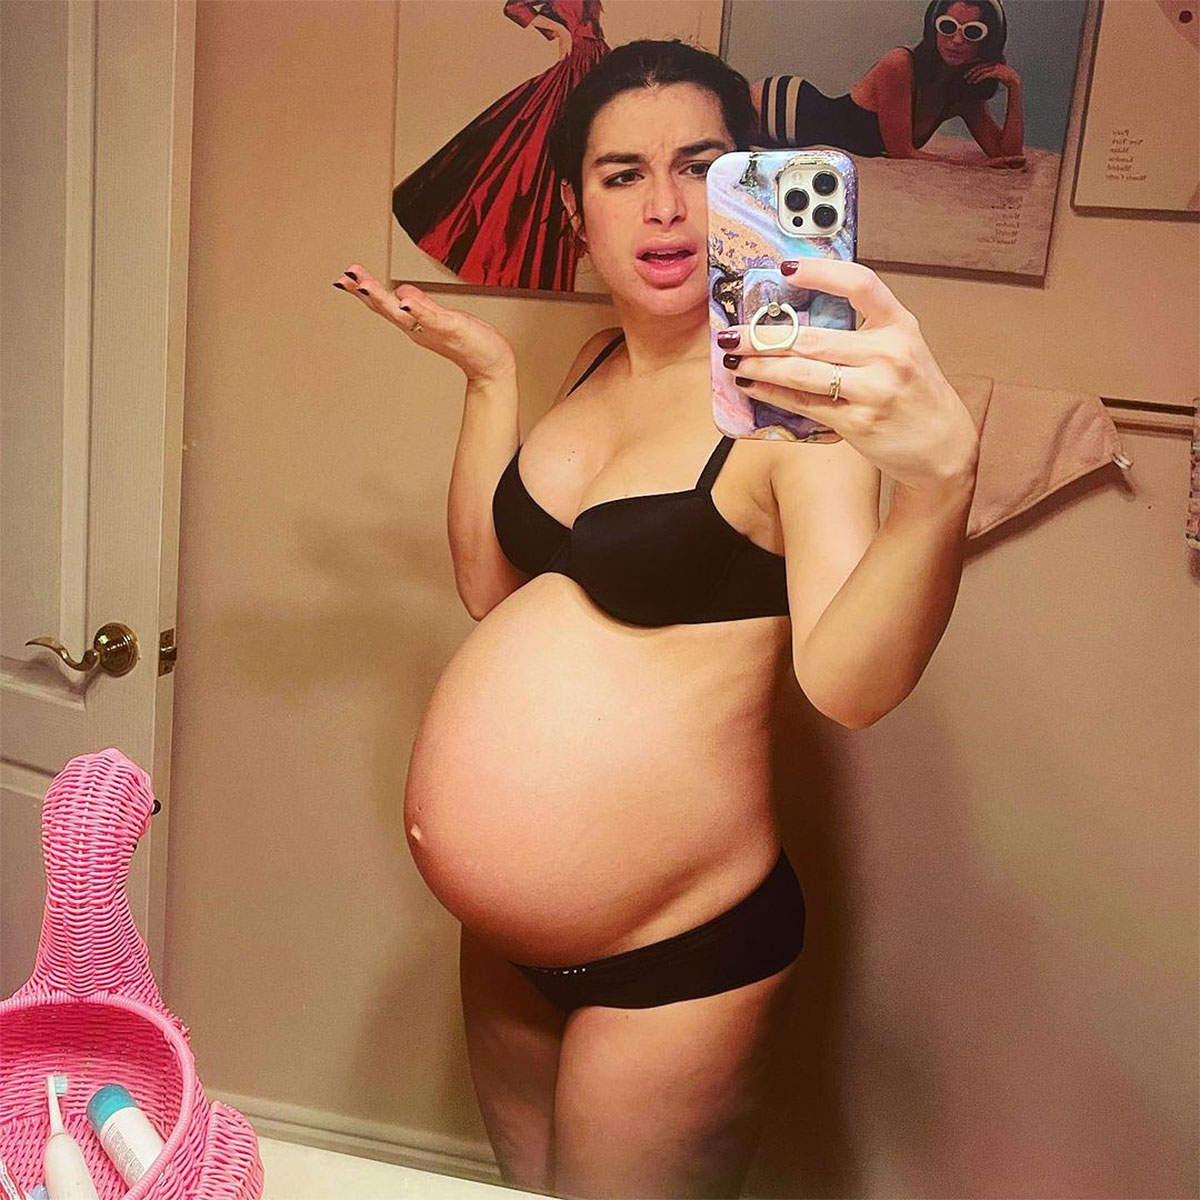 Pregnant Teen Sexy